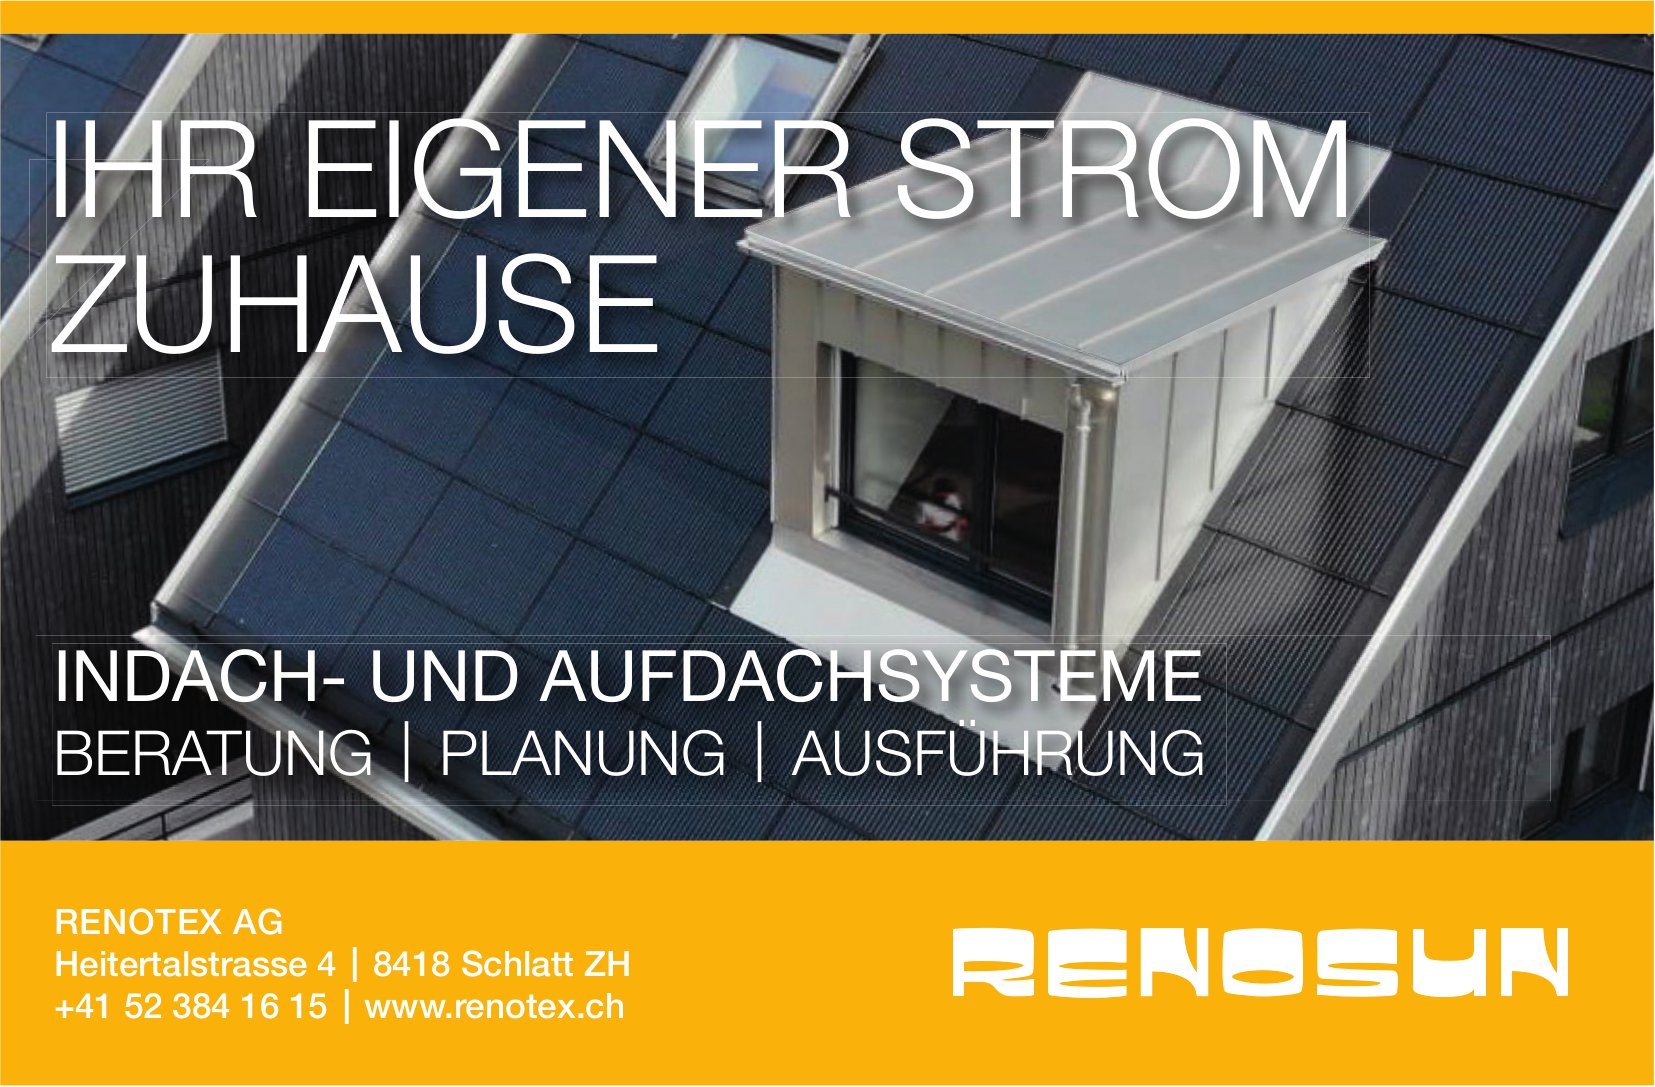 Renotex AG, Schlatt - Ihr eigener Strom zuhause